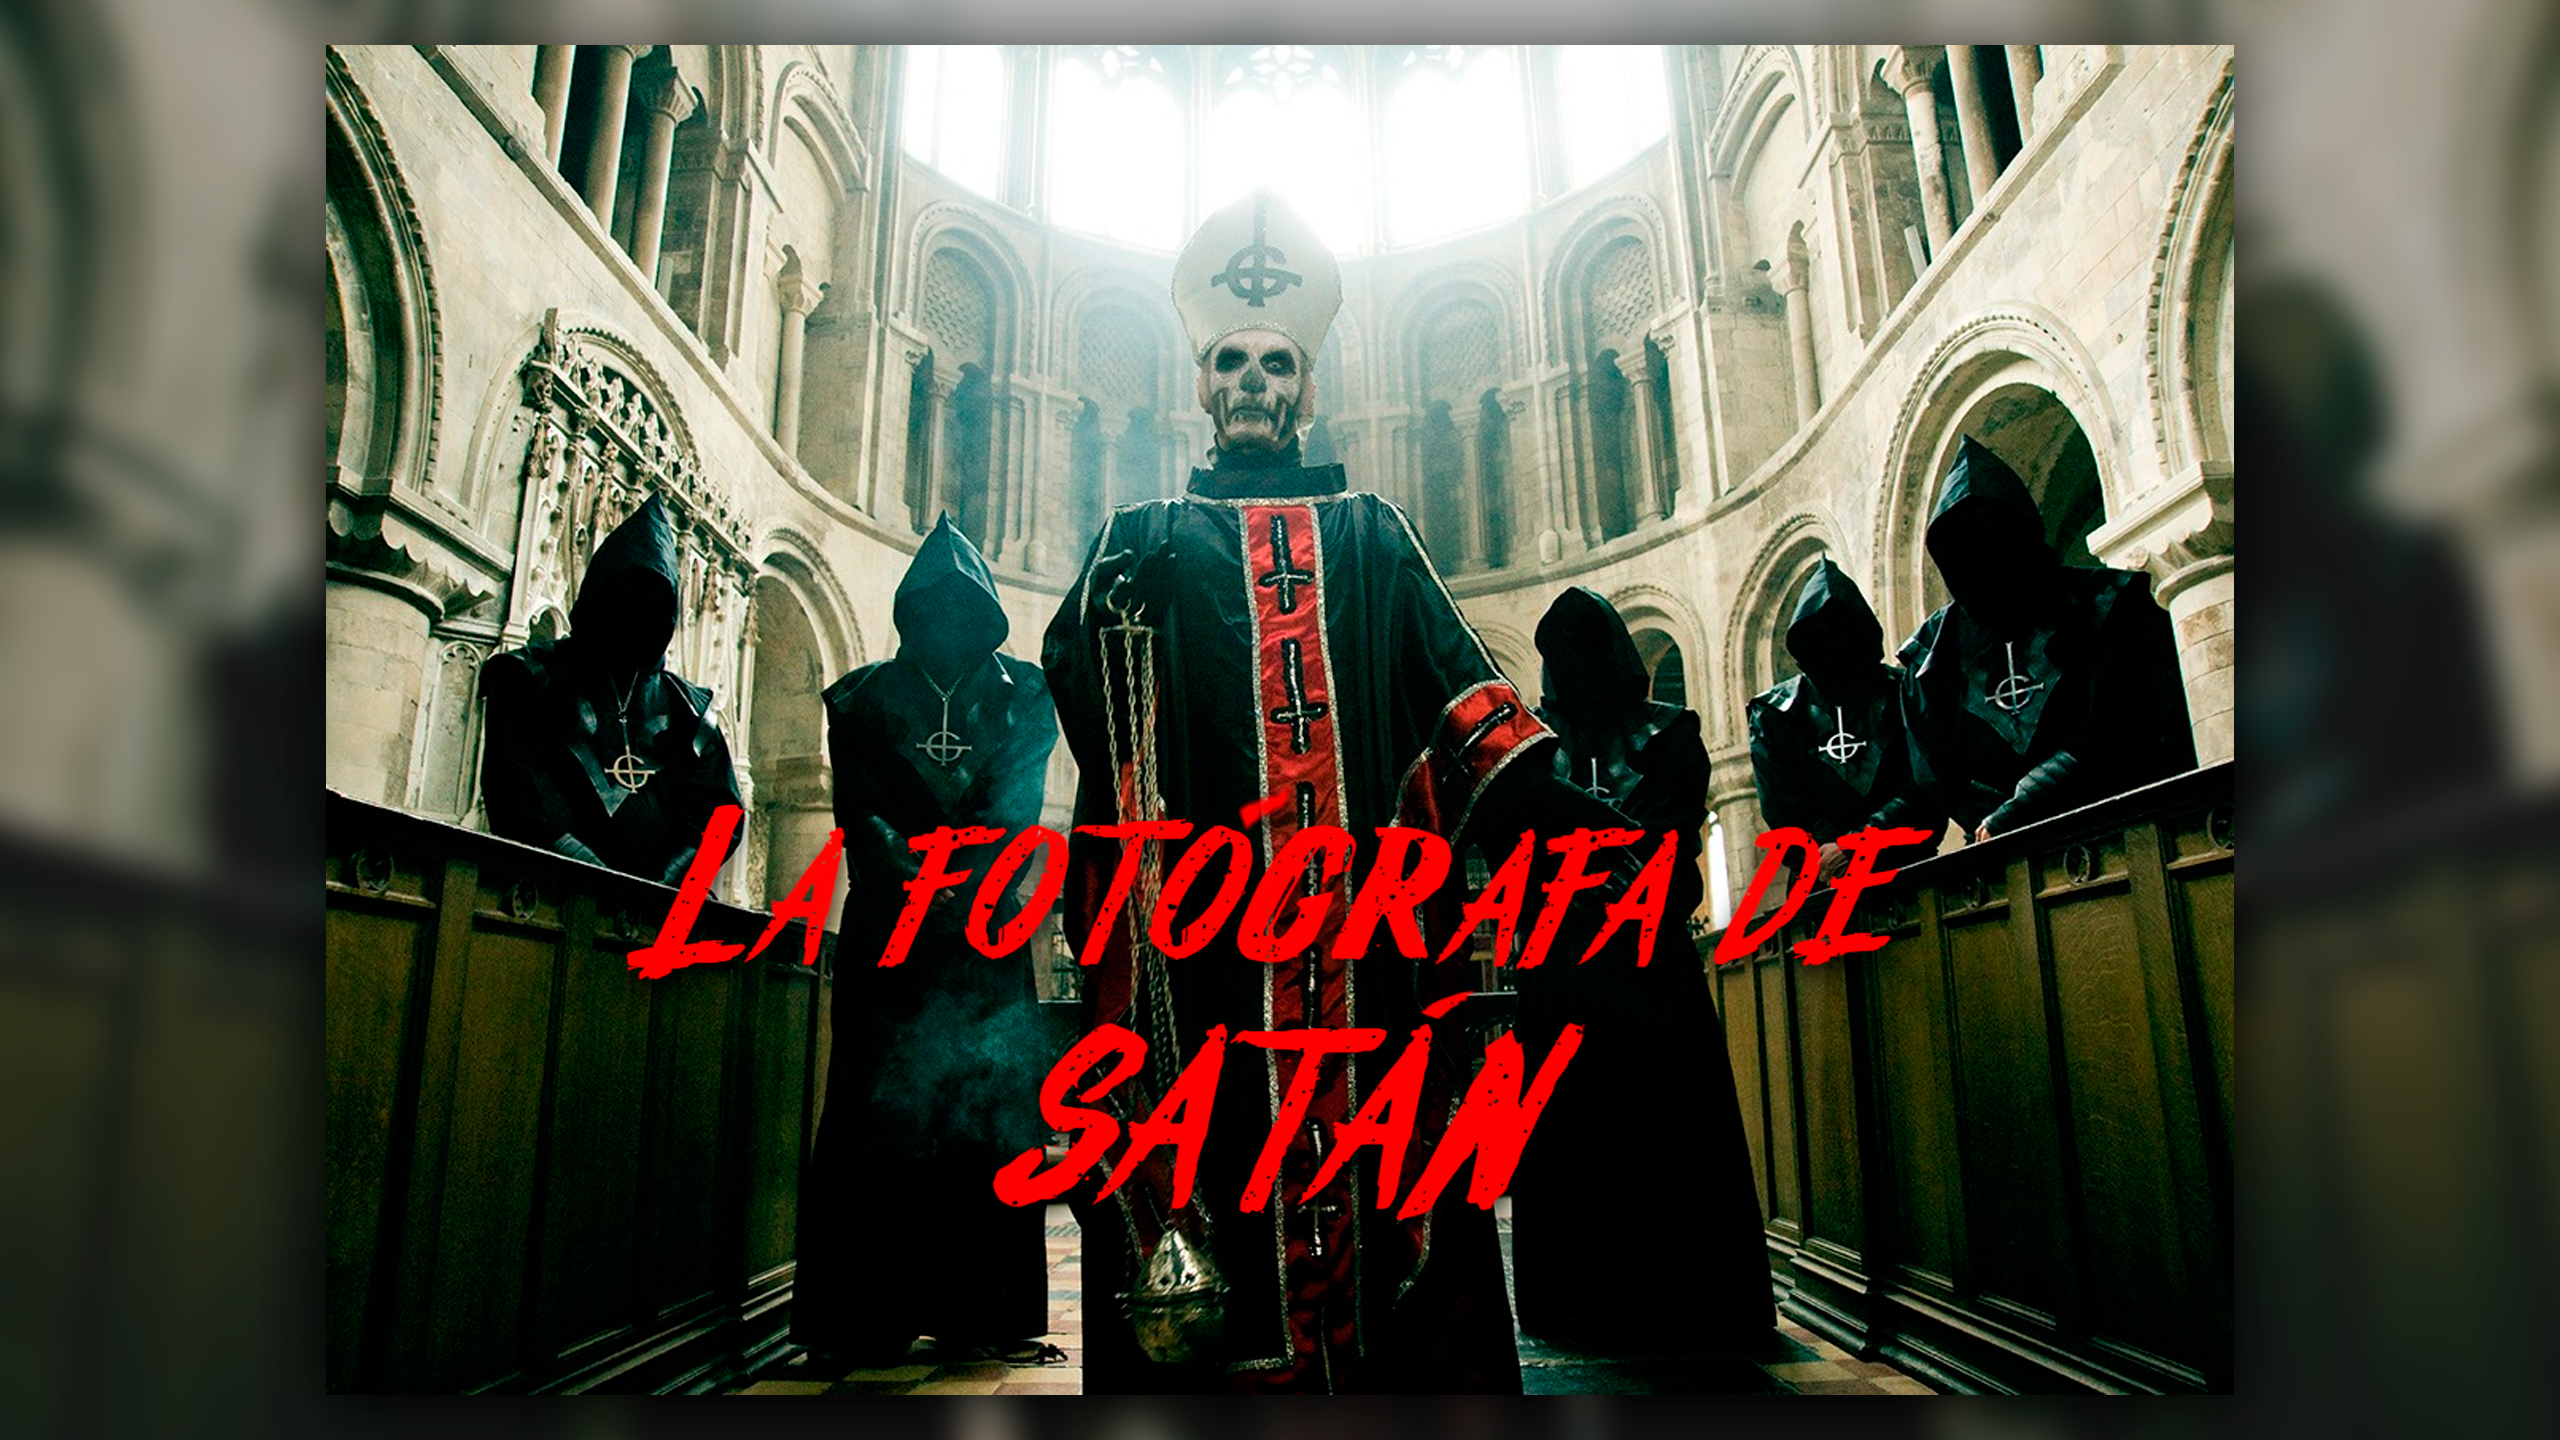 Papa Emeritus y sus discípulos reparten misas oscuras - Página 2 La-fotografa-de-satan-2560x1440